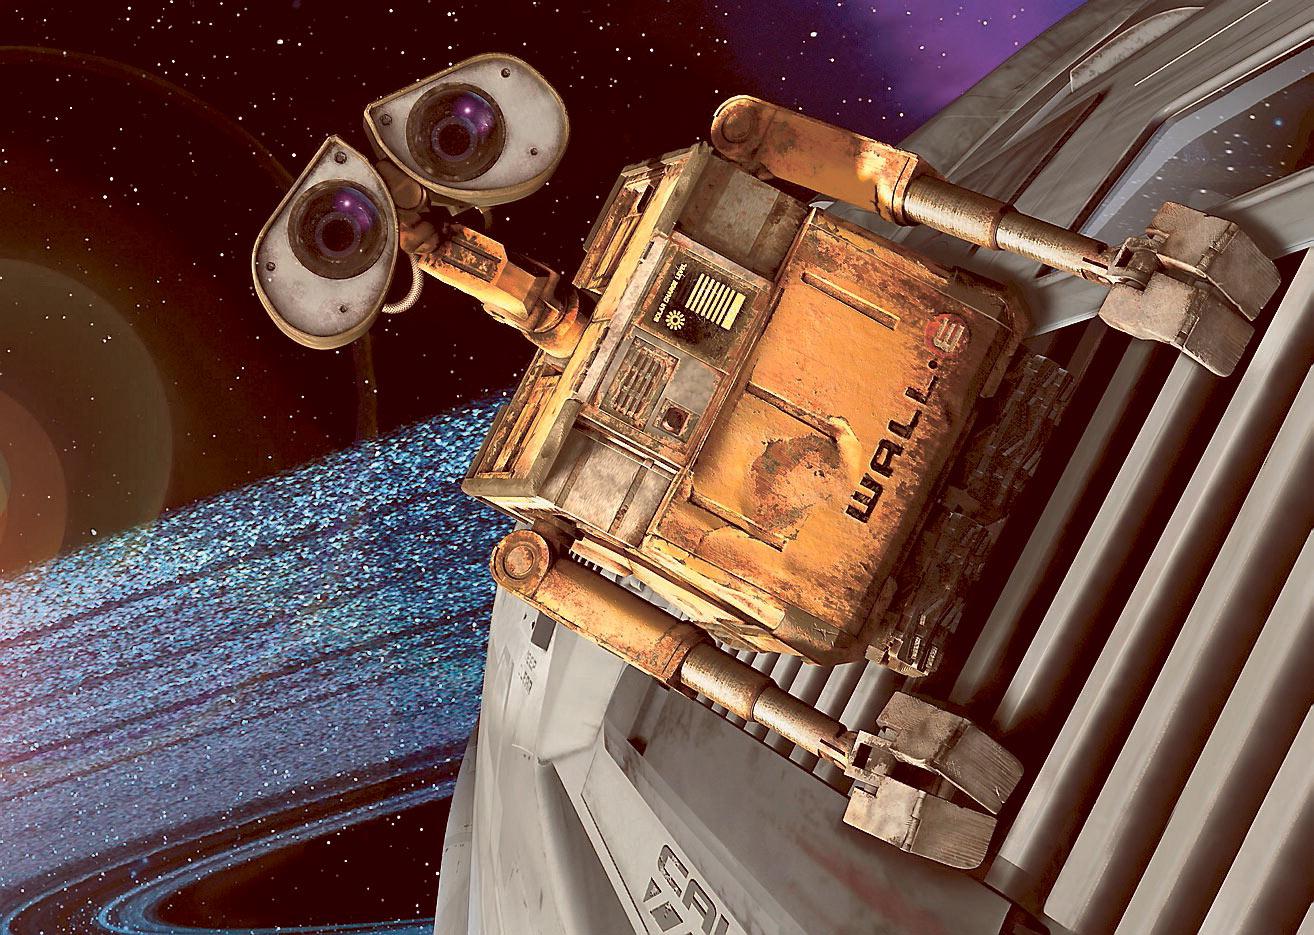 ensam kvar Den lille städroboten WALL•E är kvar på jorden och rensar i ruinerna. ”WALL•E” har både svärta och humor – kryddat med en rejäl portion civilisationskritik.